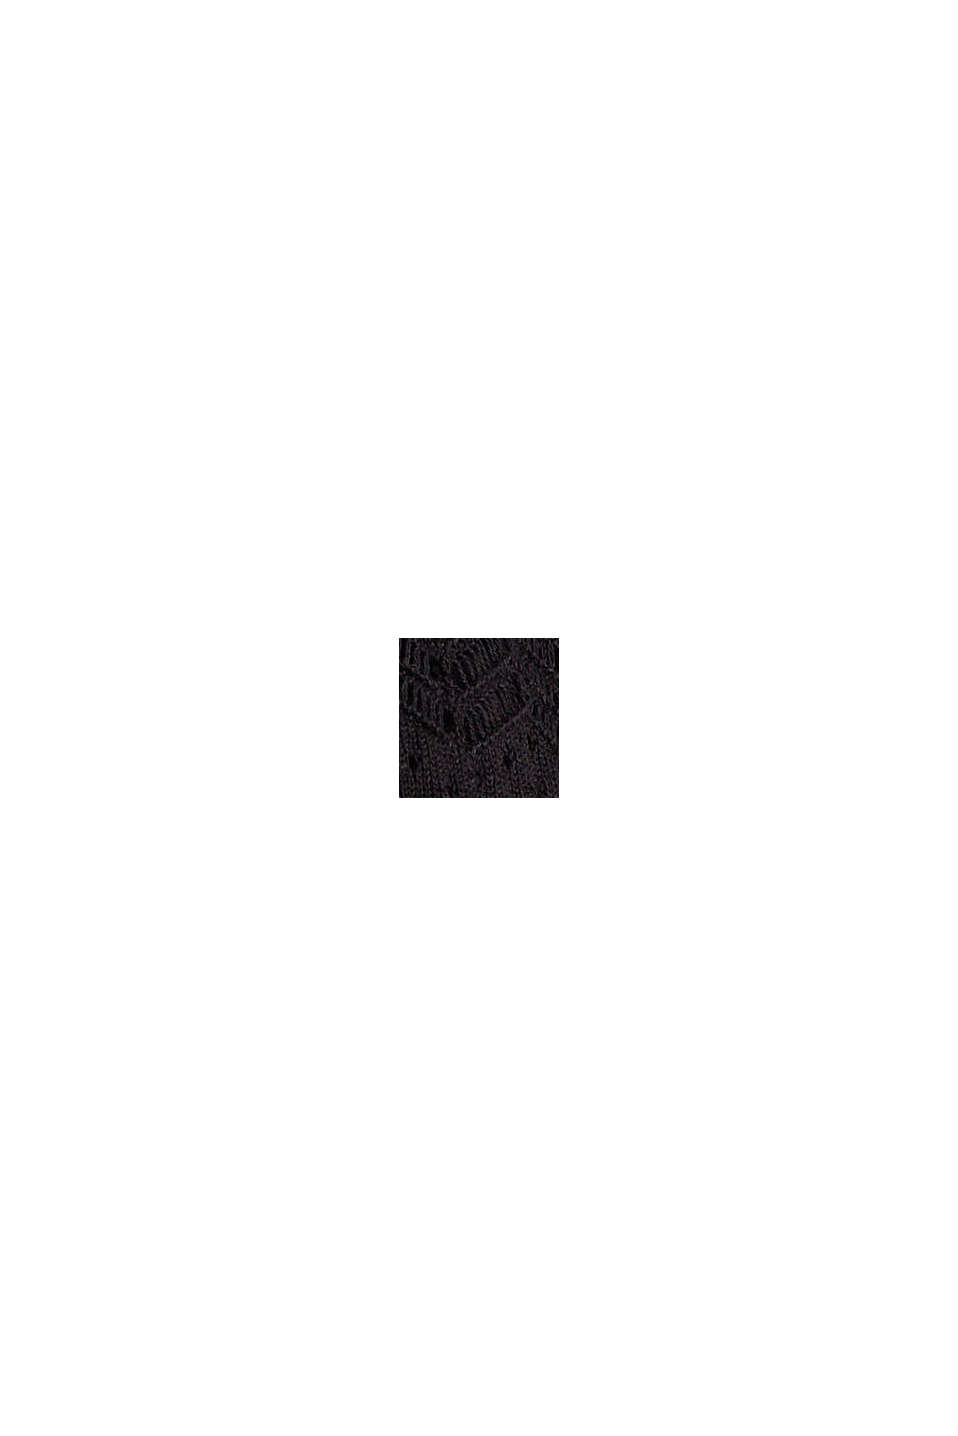 Kardigan w ażurowy wzór, 100% bawełny, BLACK, swatch